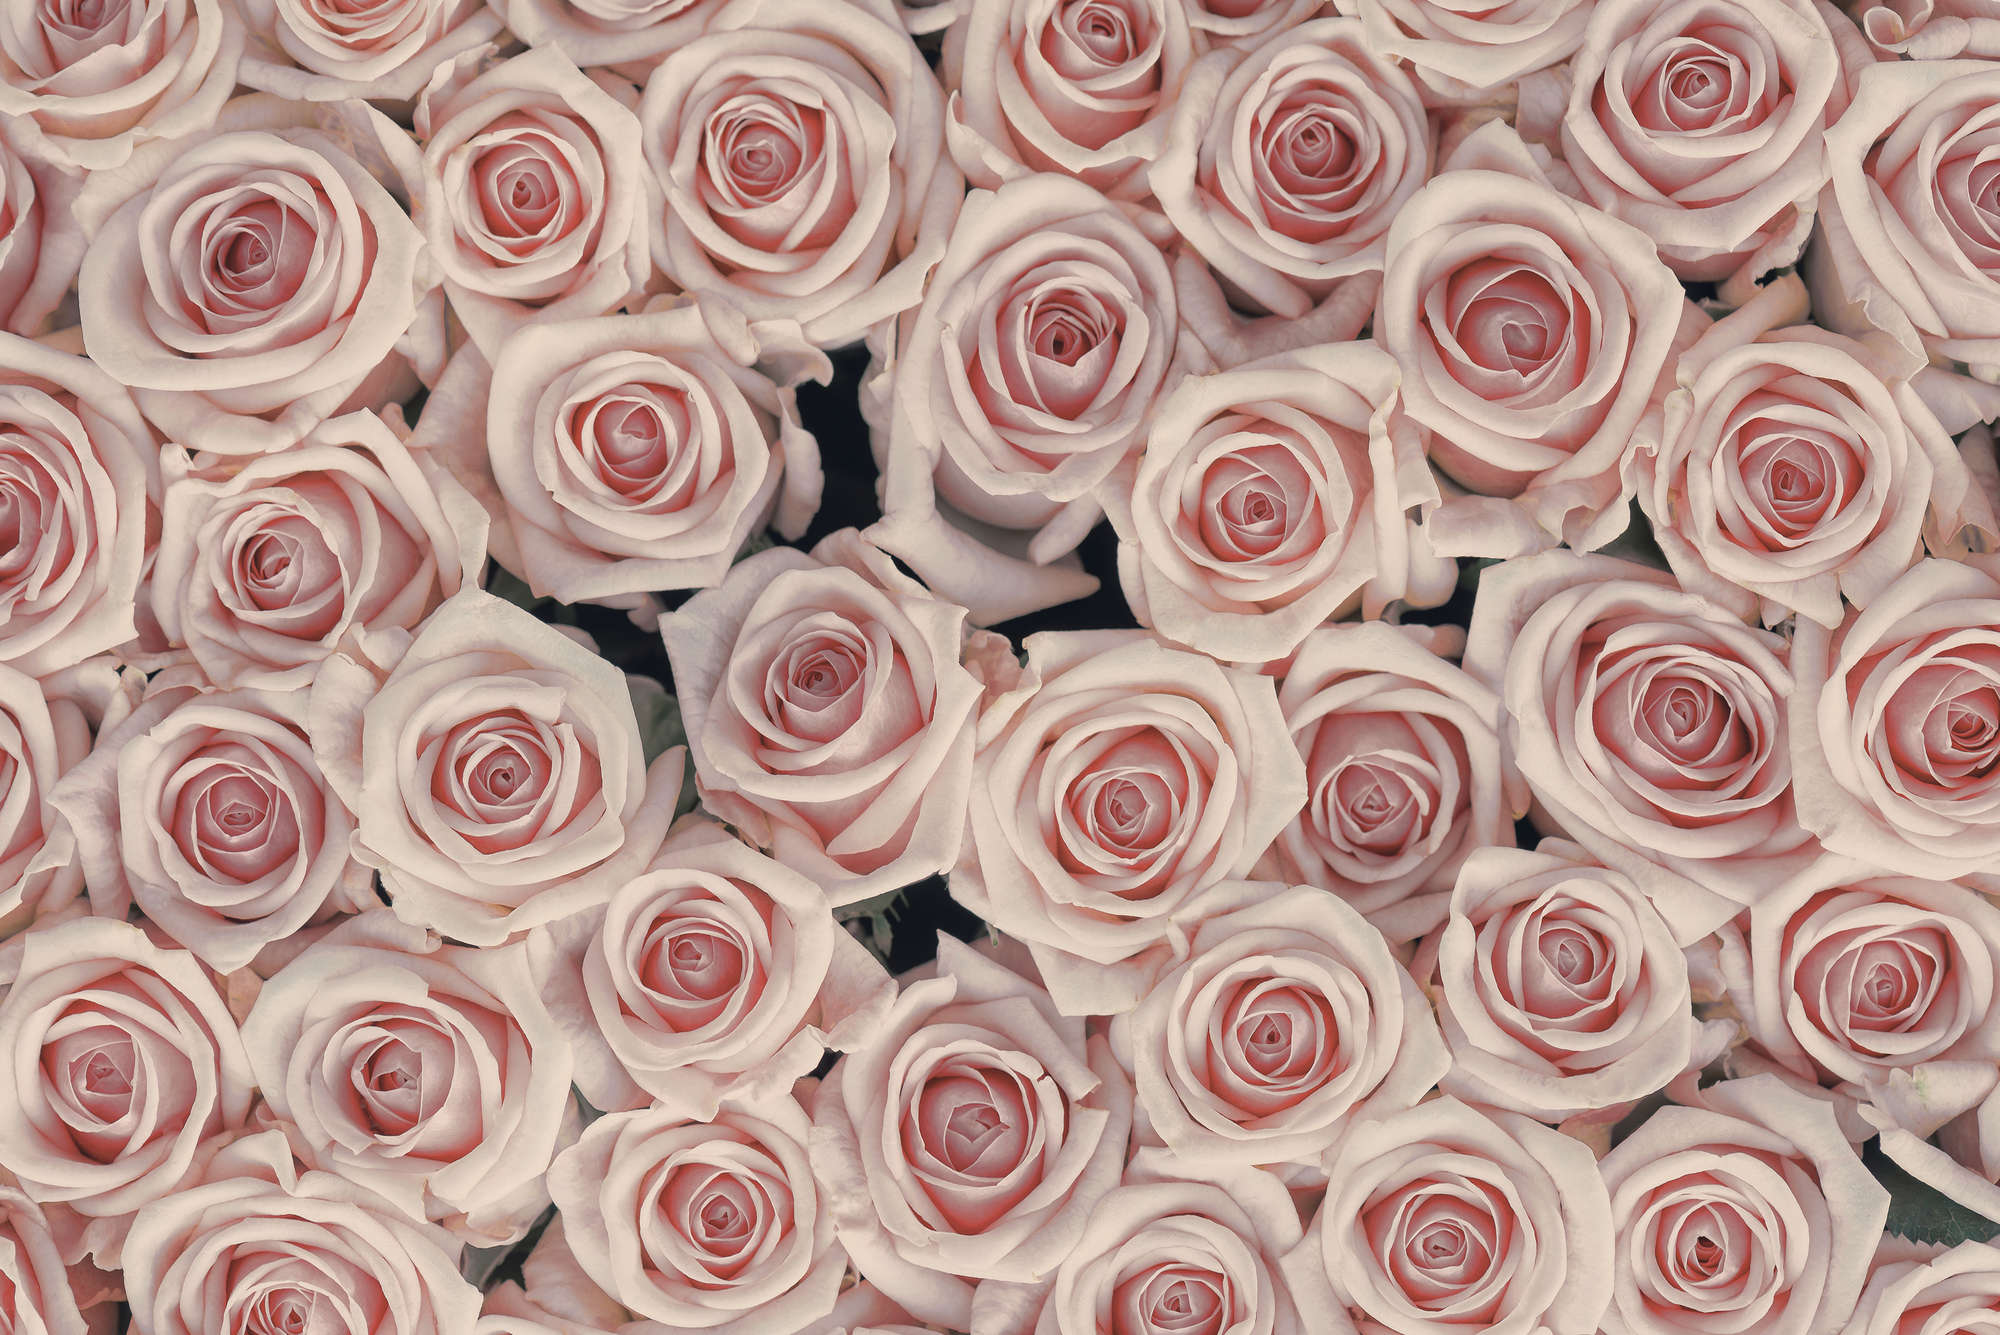             Carta da parati per piante Rose rosa e bianche su vello liscio opaco
        